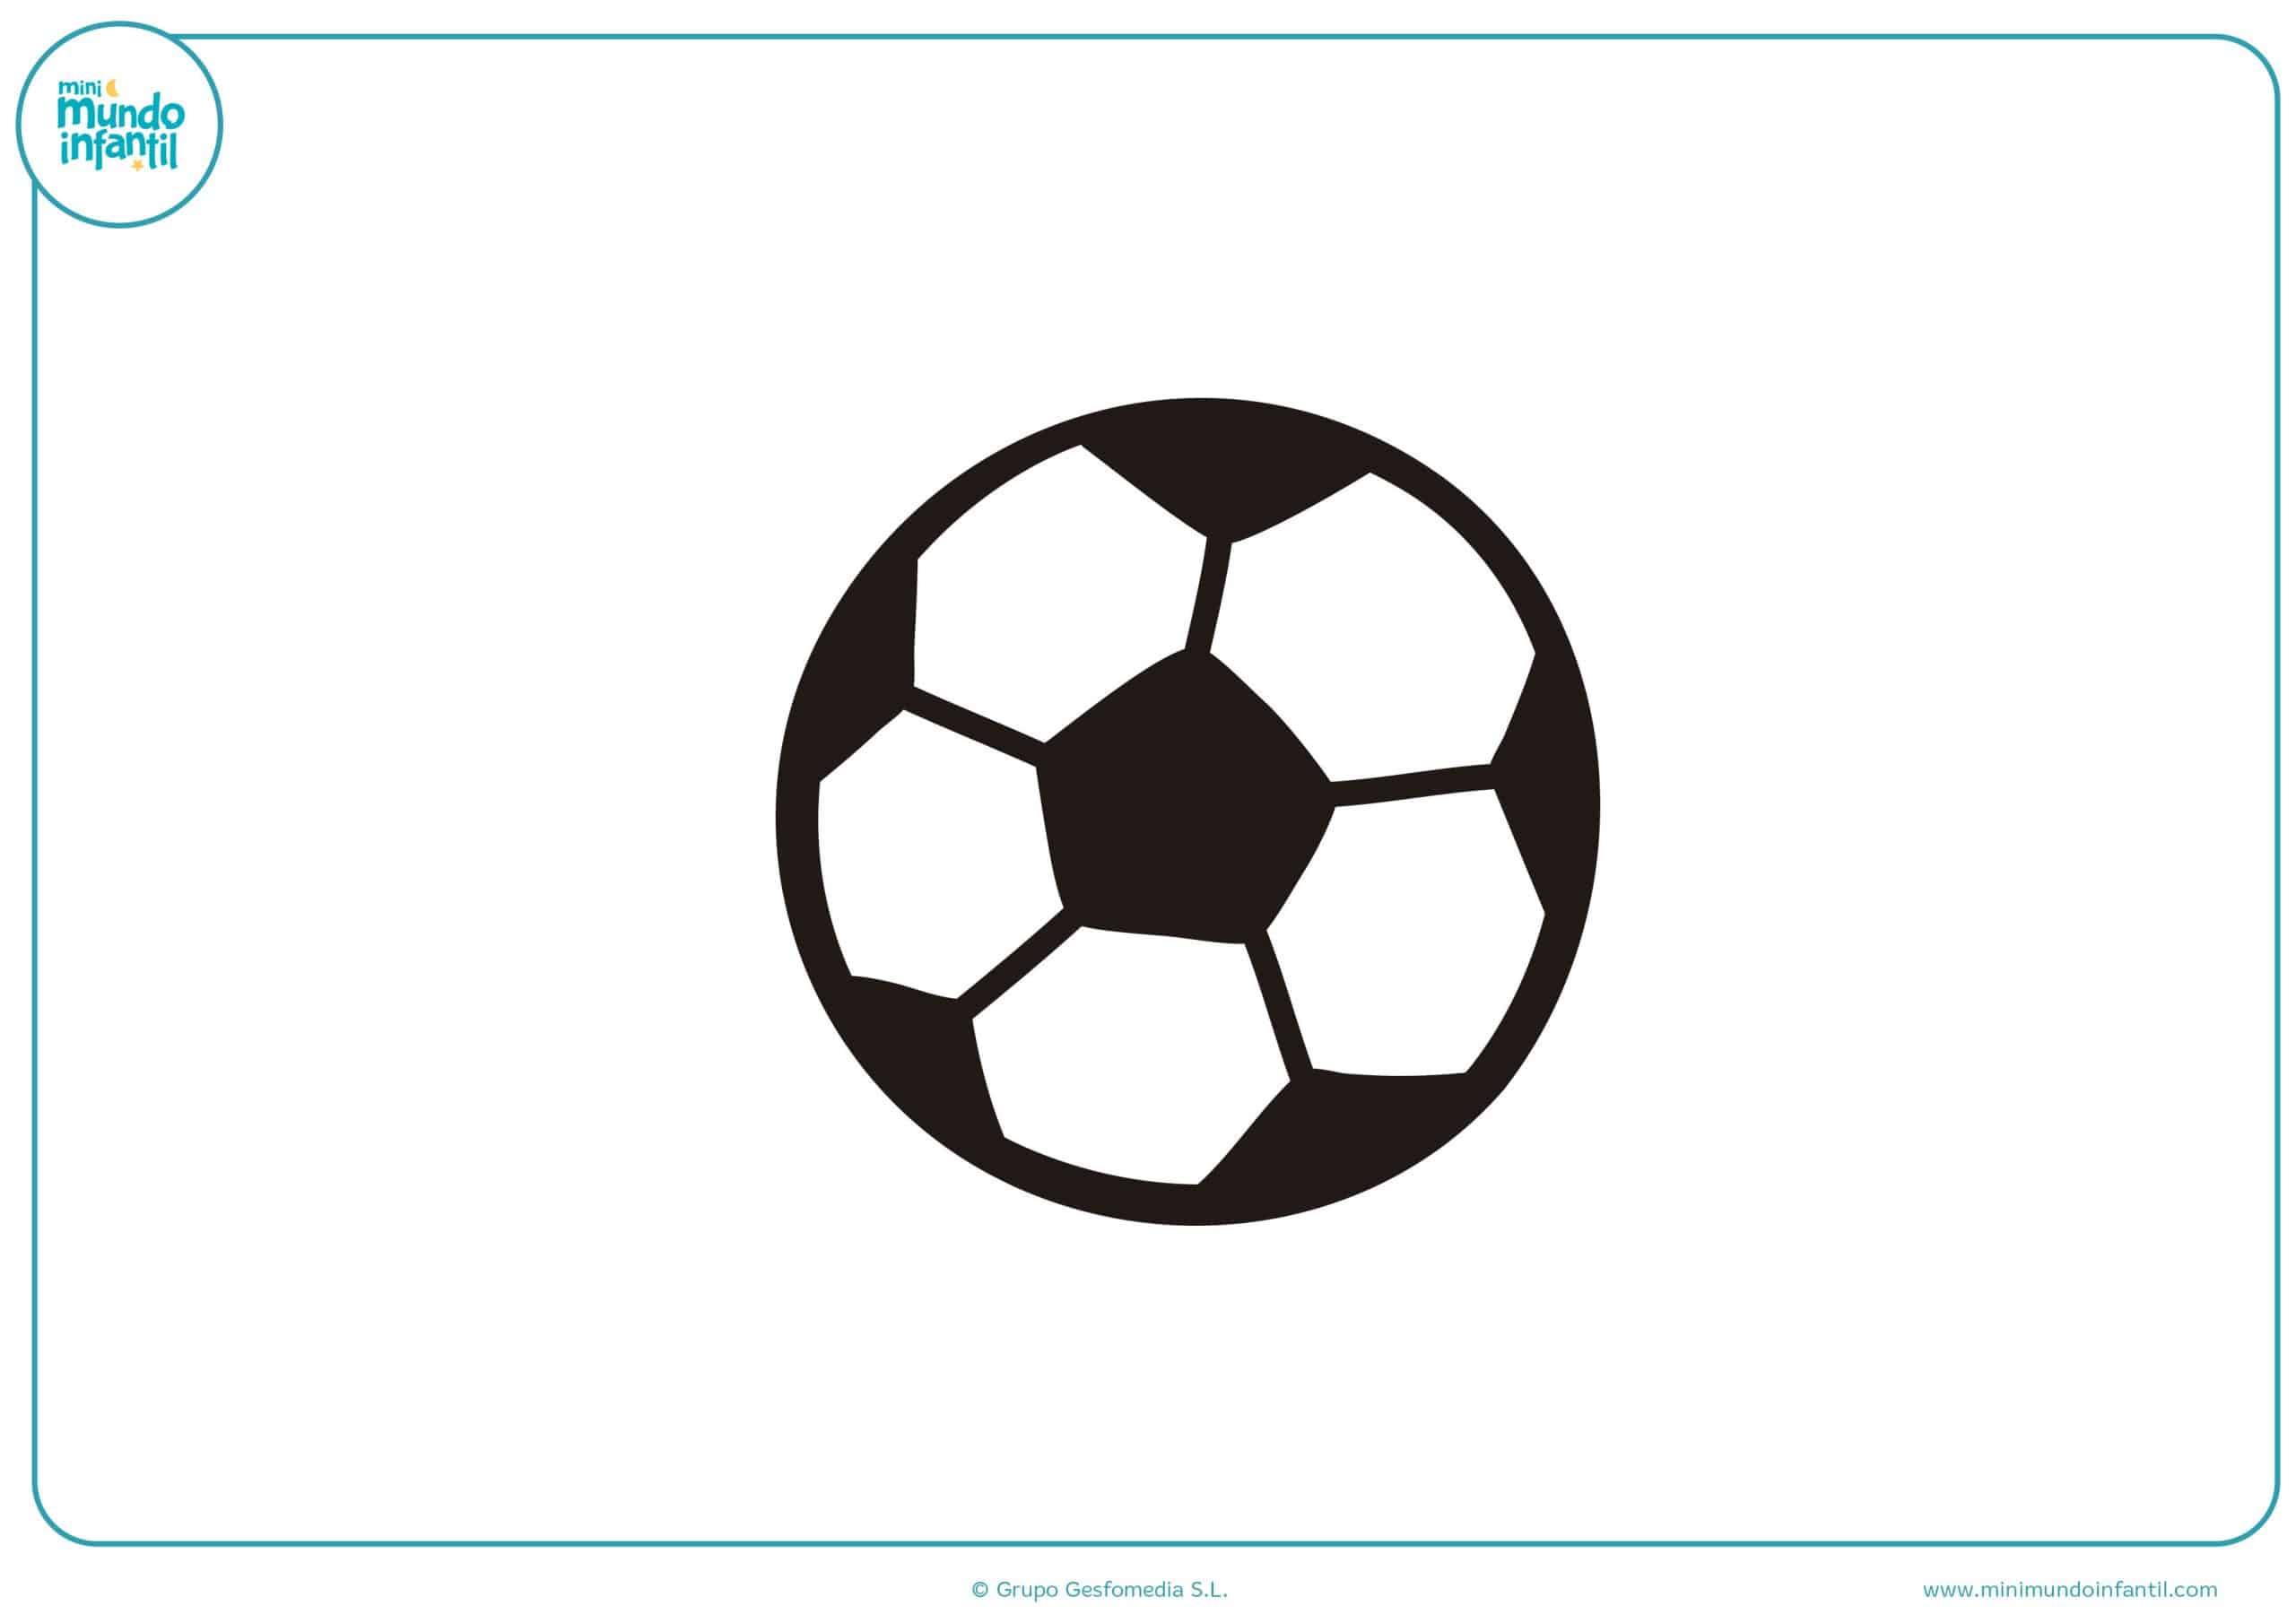 Los mejores dibujos de fútbol para colorear e imprimir